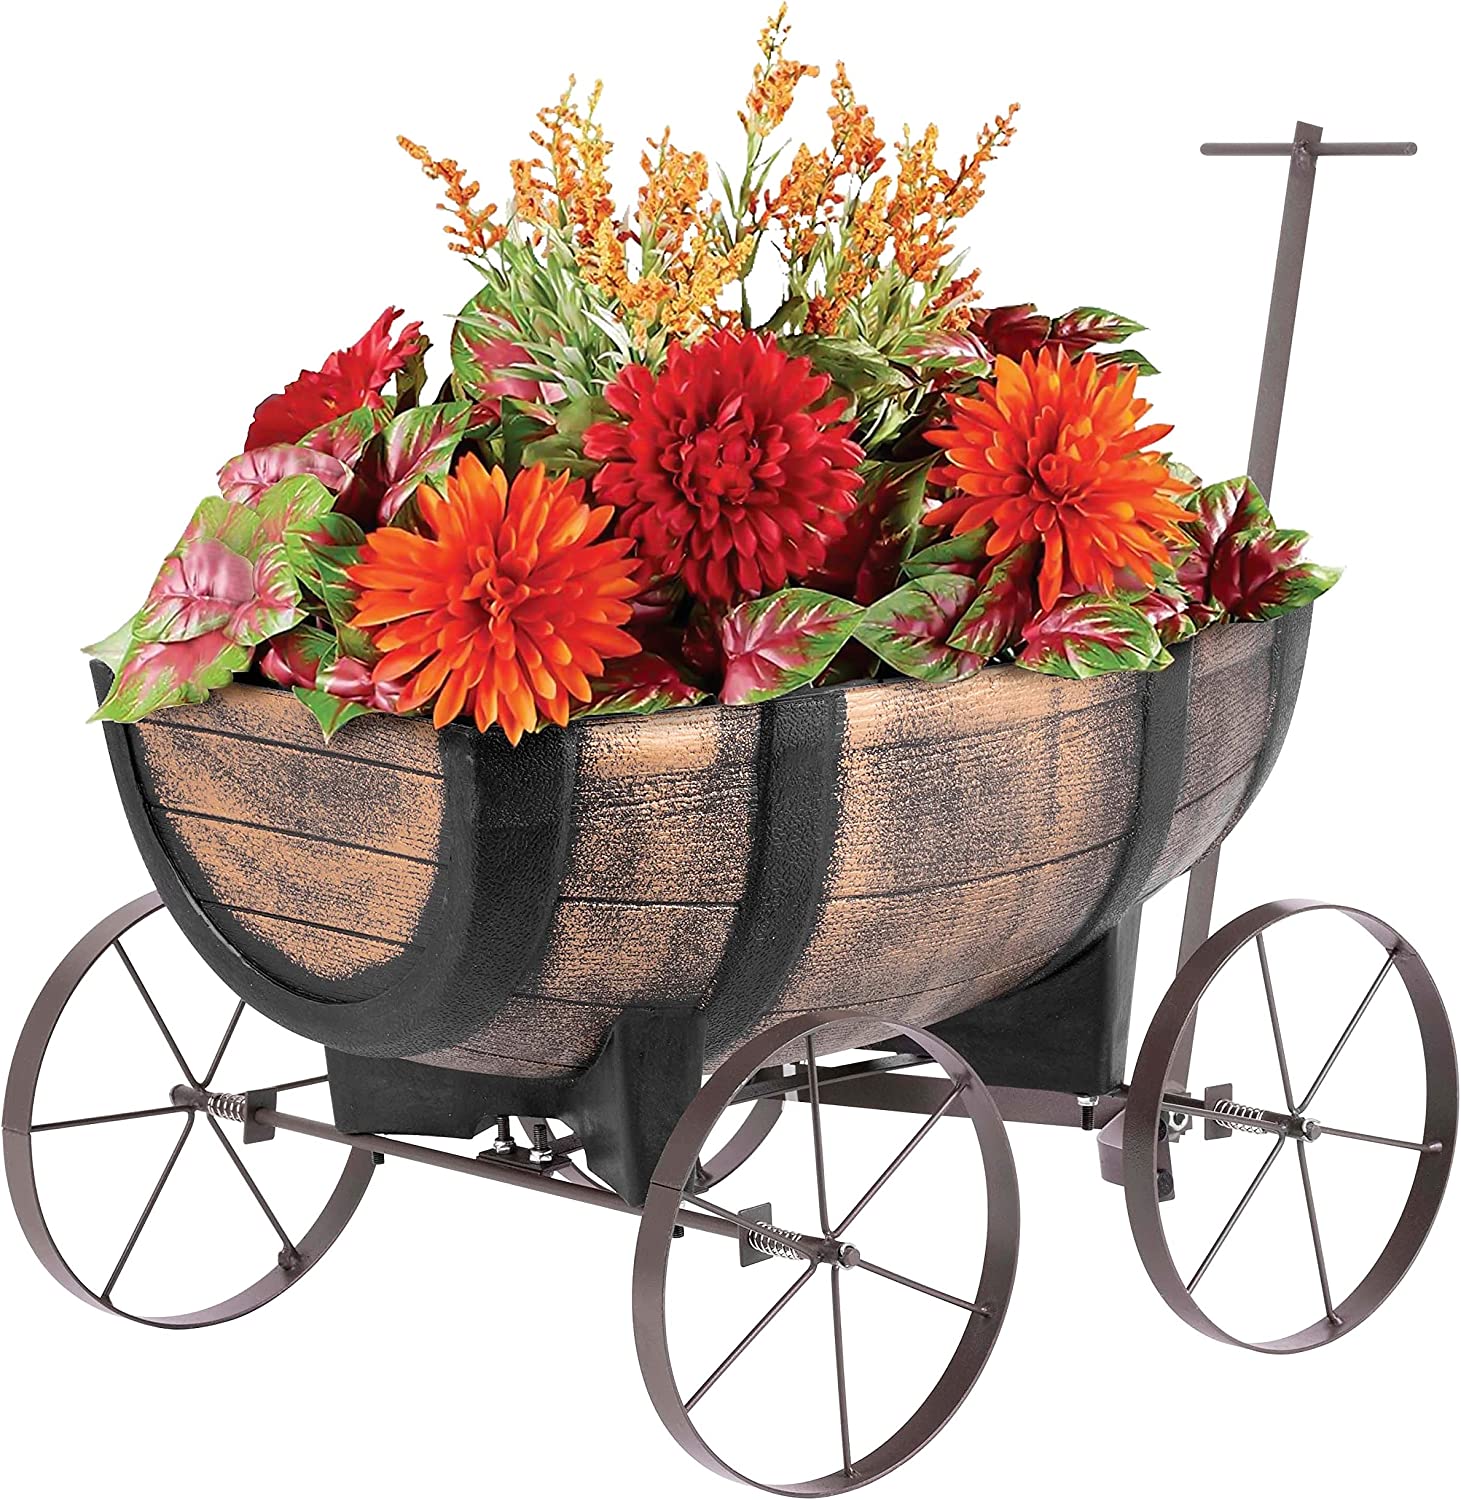 Pflanzenwagen Whiskyfass | Maße Pflanzfläche 41x29x19 cm | Blumenwagen in Holzoptik auf Rädern | Blumentopf Pflanzenkarre für Innen- & Außen, Gartendeko